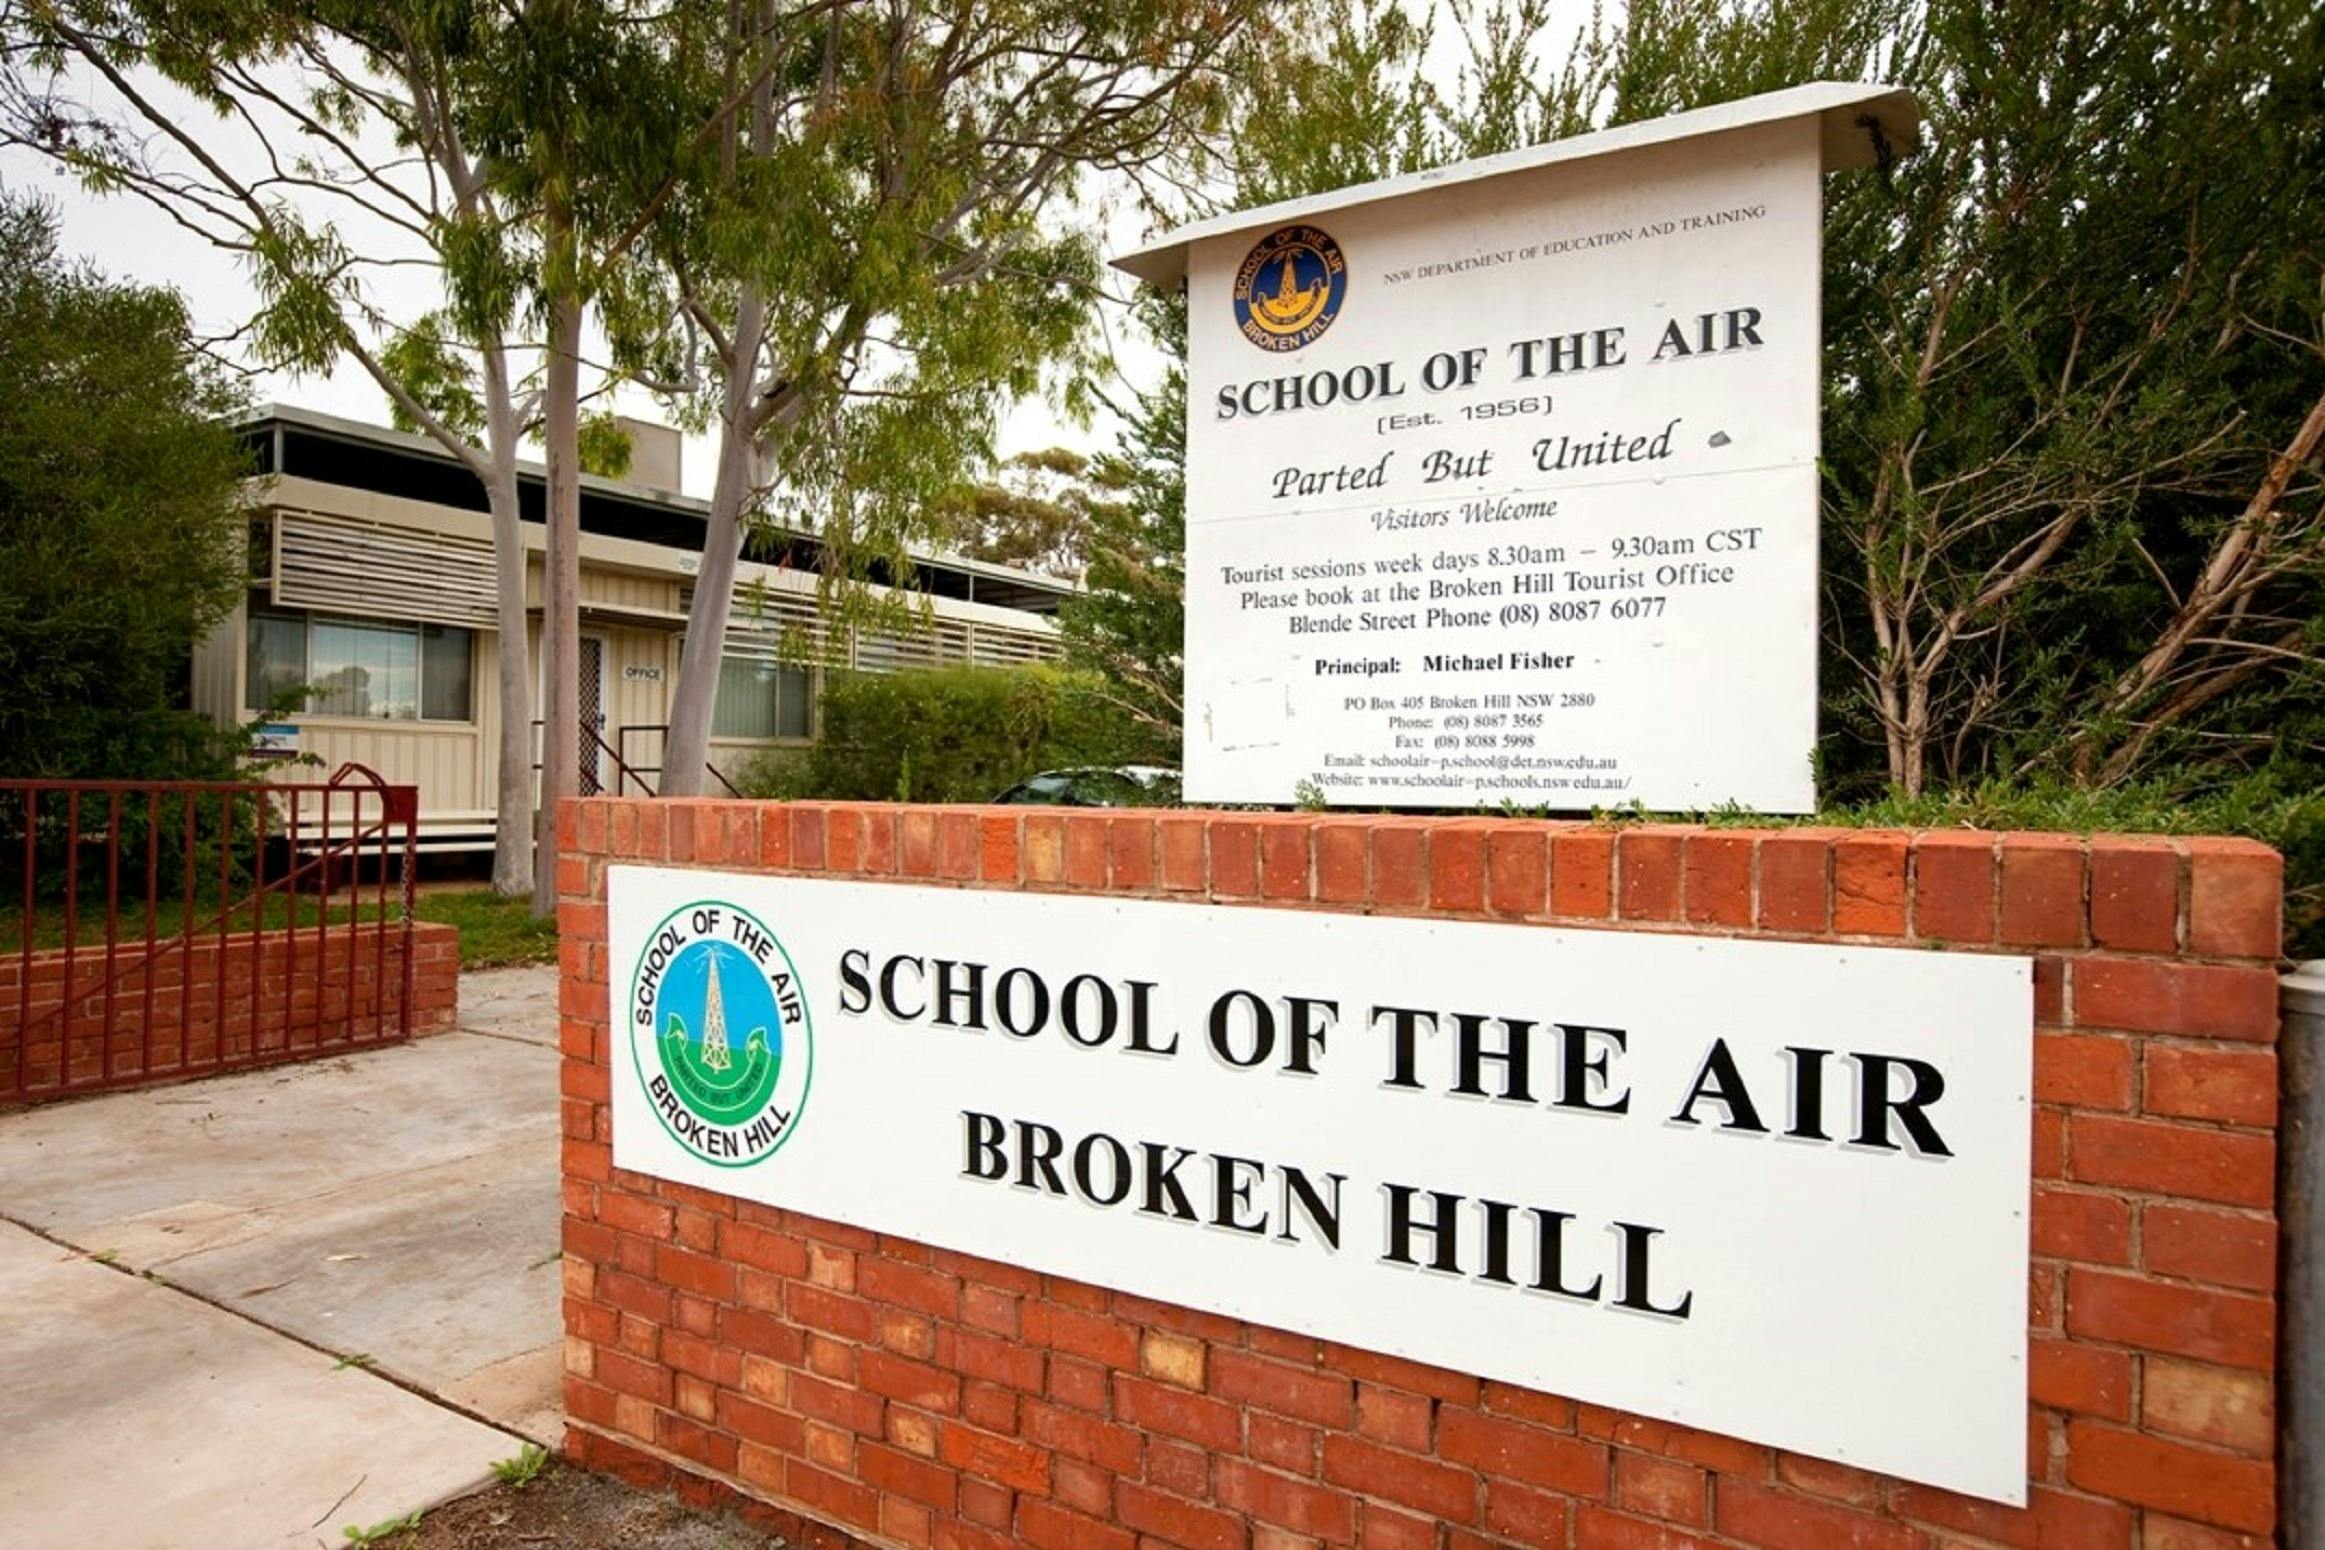 Брокен Хиллс. School of the Air. School of the Air текст. School of the Air in Australia.